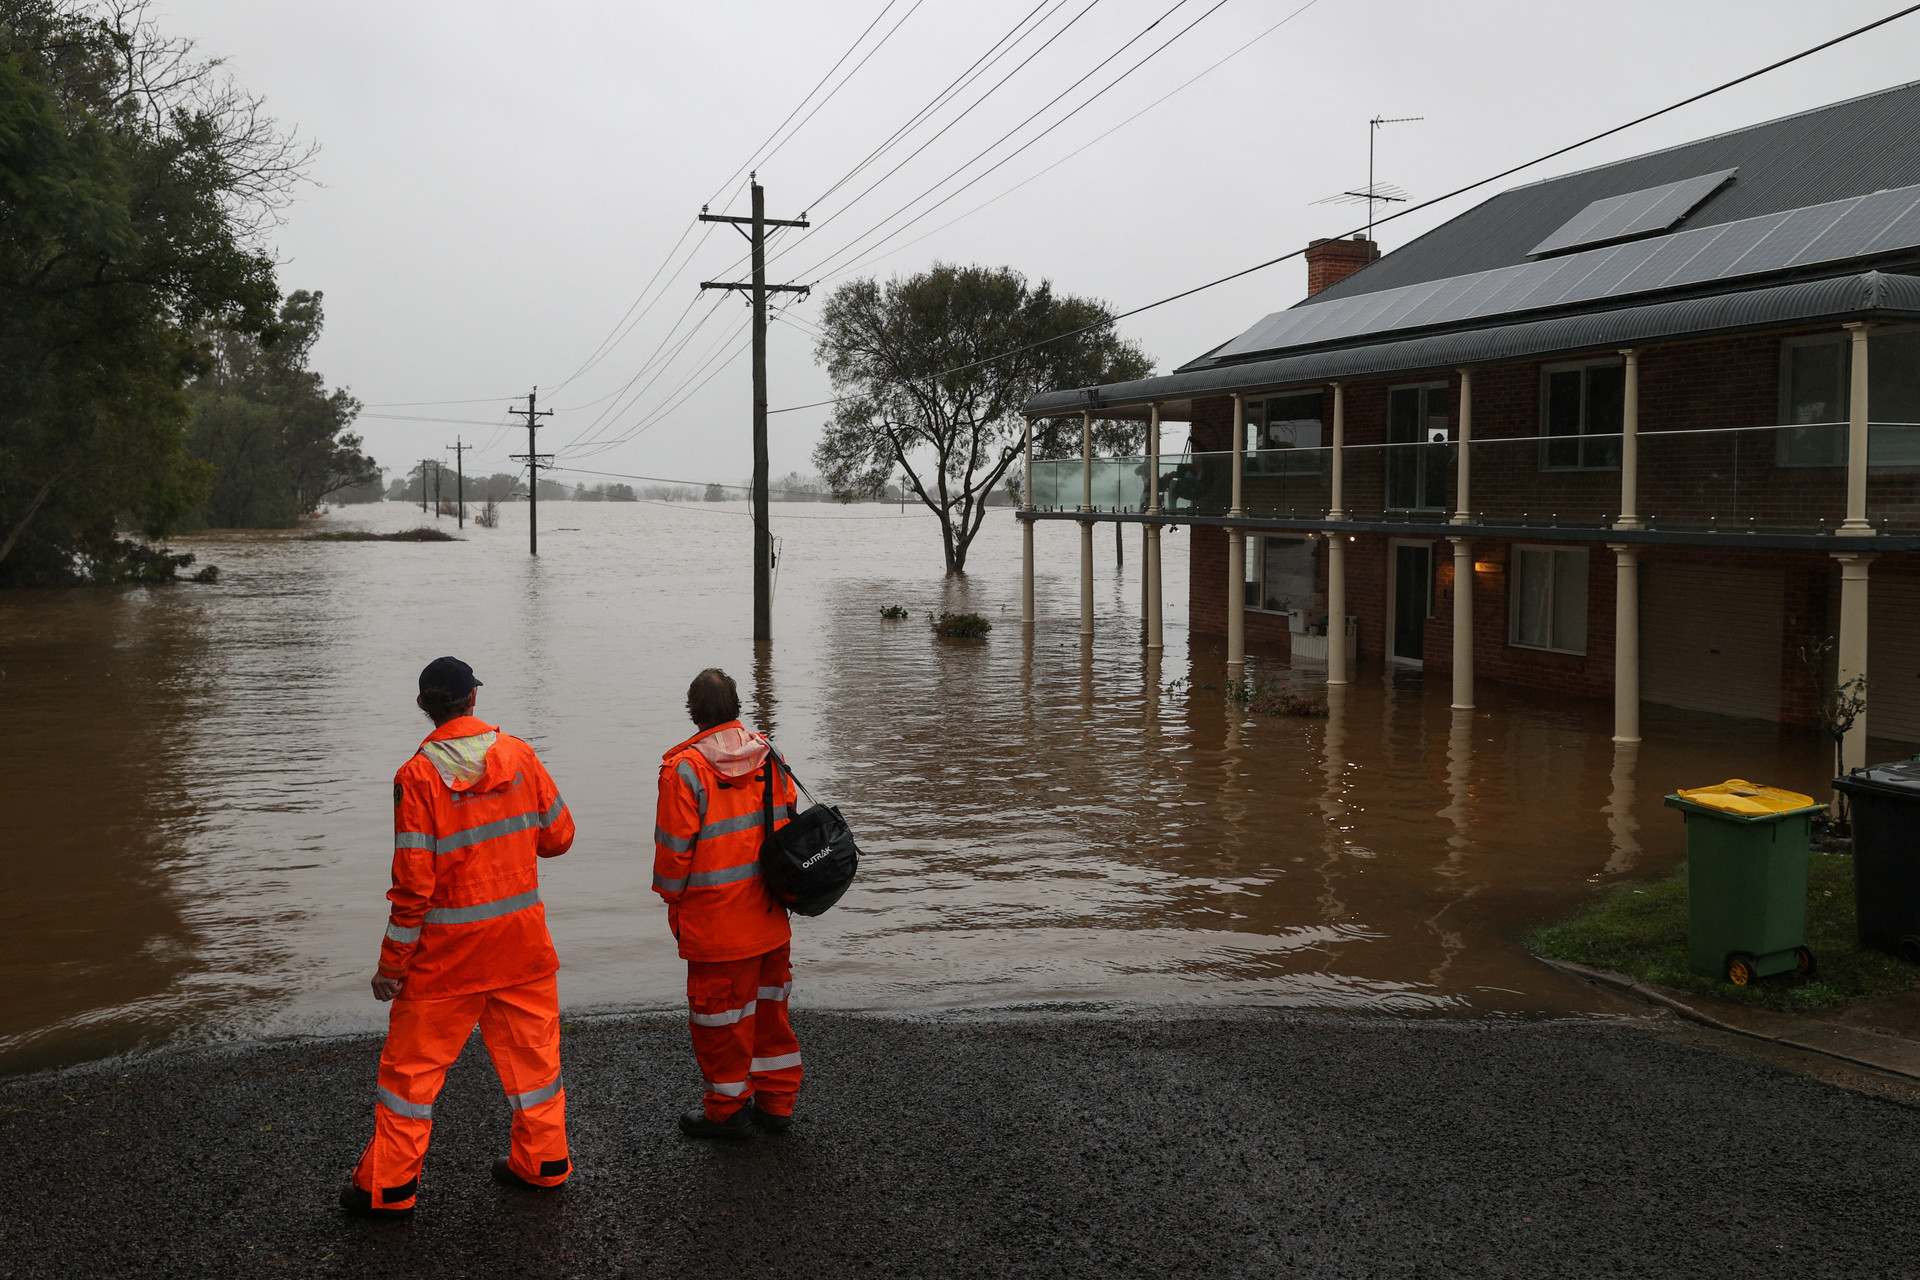 Thảm họa lũ lụt ở Úc: Xe hơi đậu trên nóc nhà, 50.000 dân sơ tán - Ảnh 3.